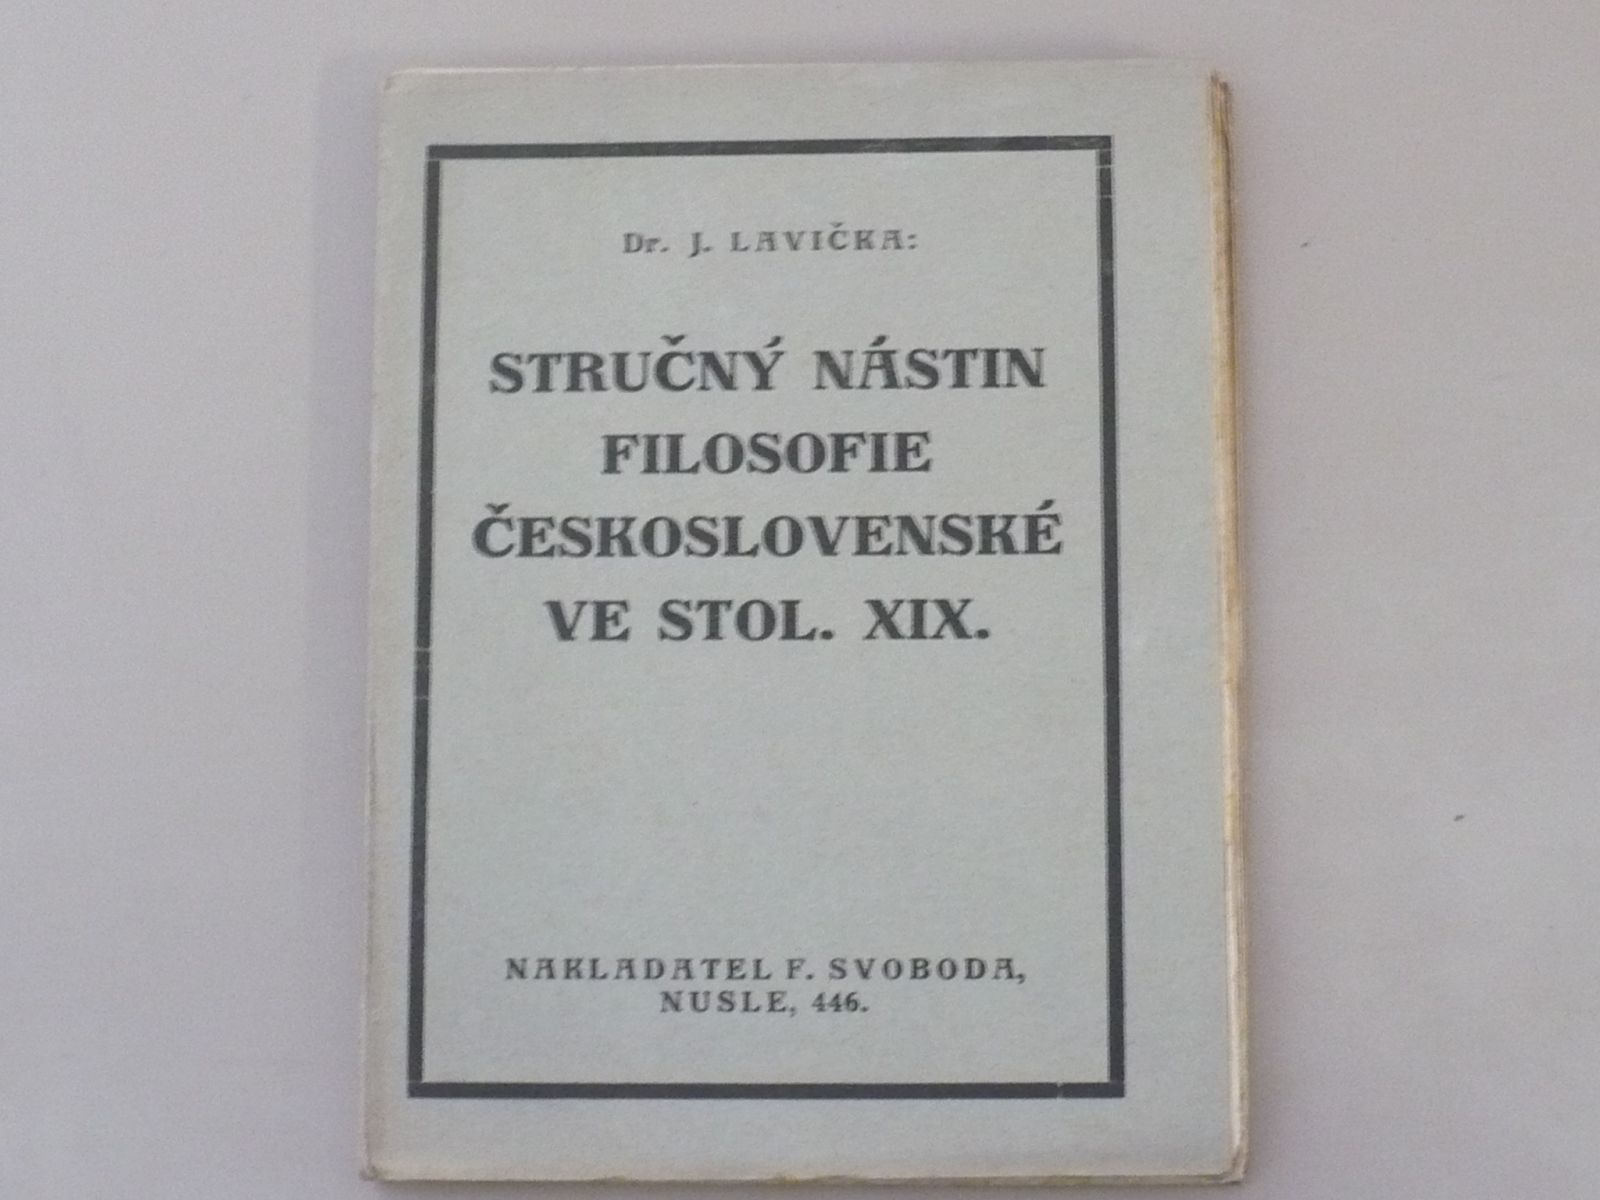 Dr. J. Lavička - Stručný nástin filosofie československé ve stol. XIX. (1925)